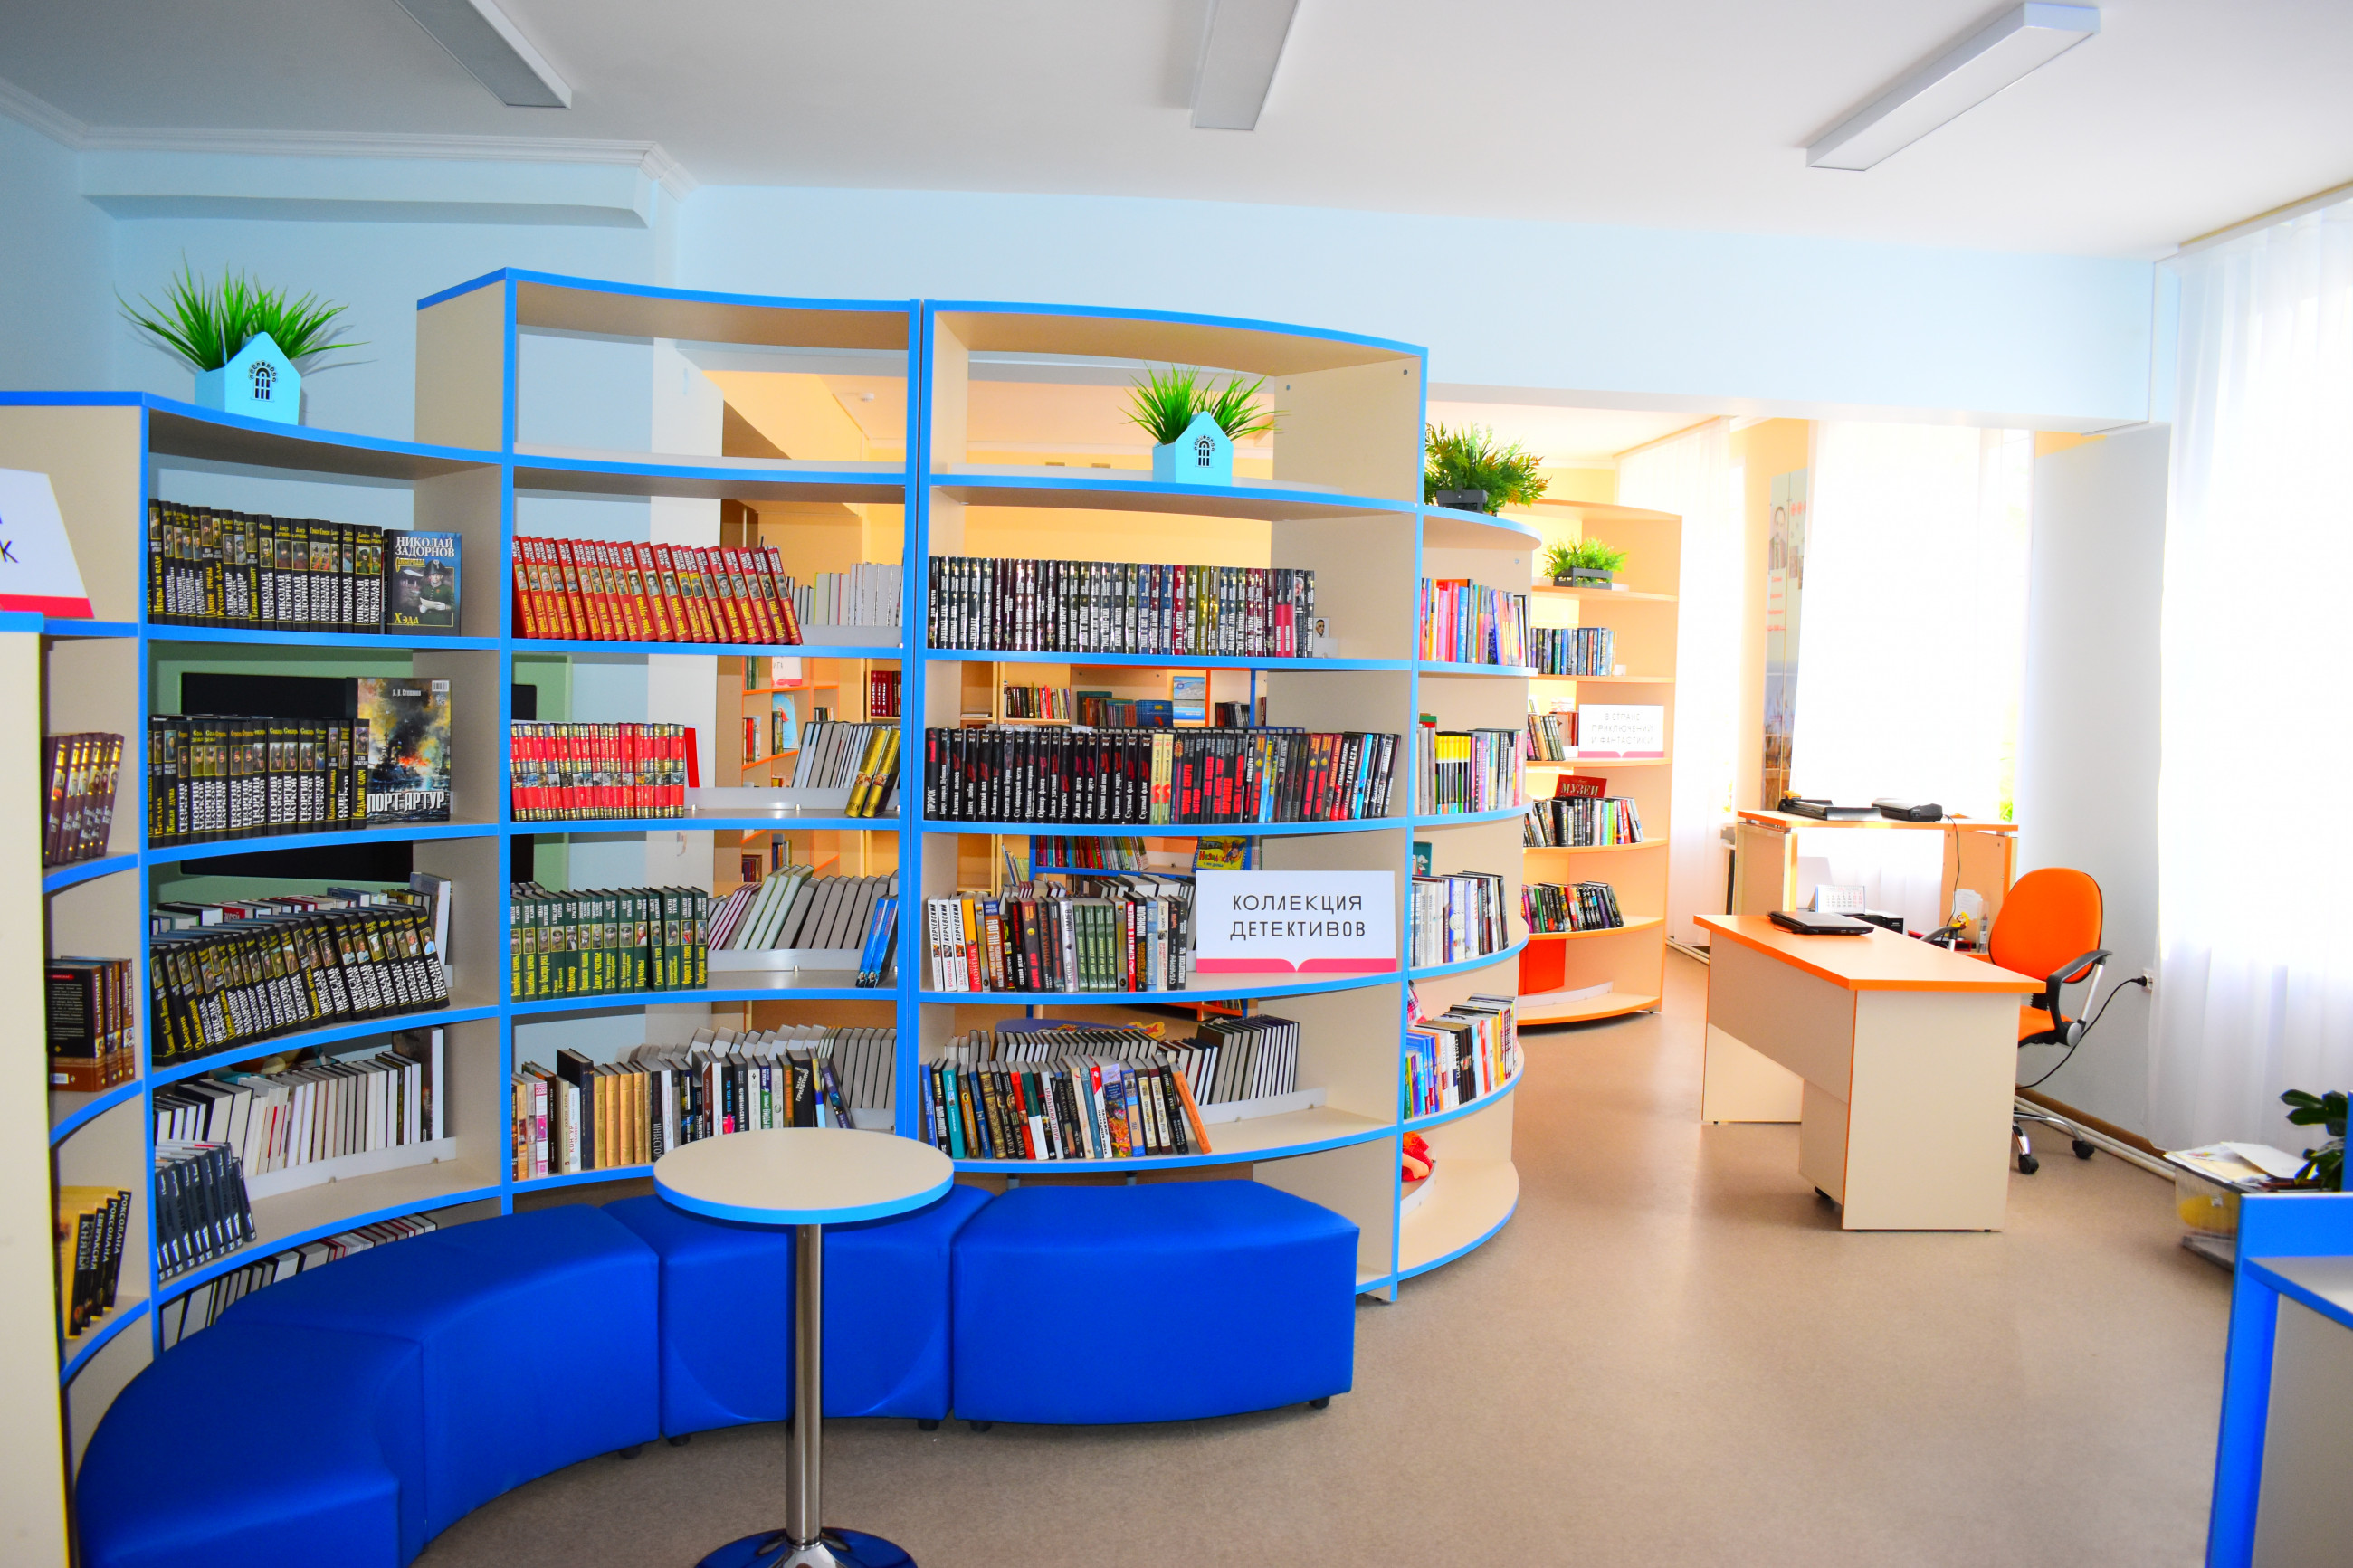 Библиотека детская приморский. Модельная библиотека. Новая библиотека. Библиотека нового поколения. Современная модельная библиотека.